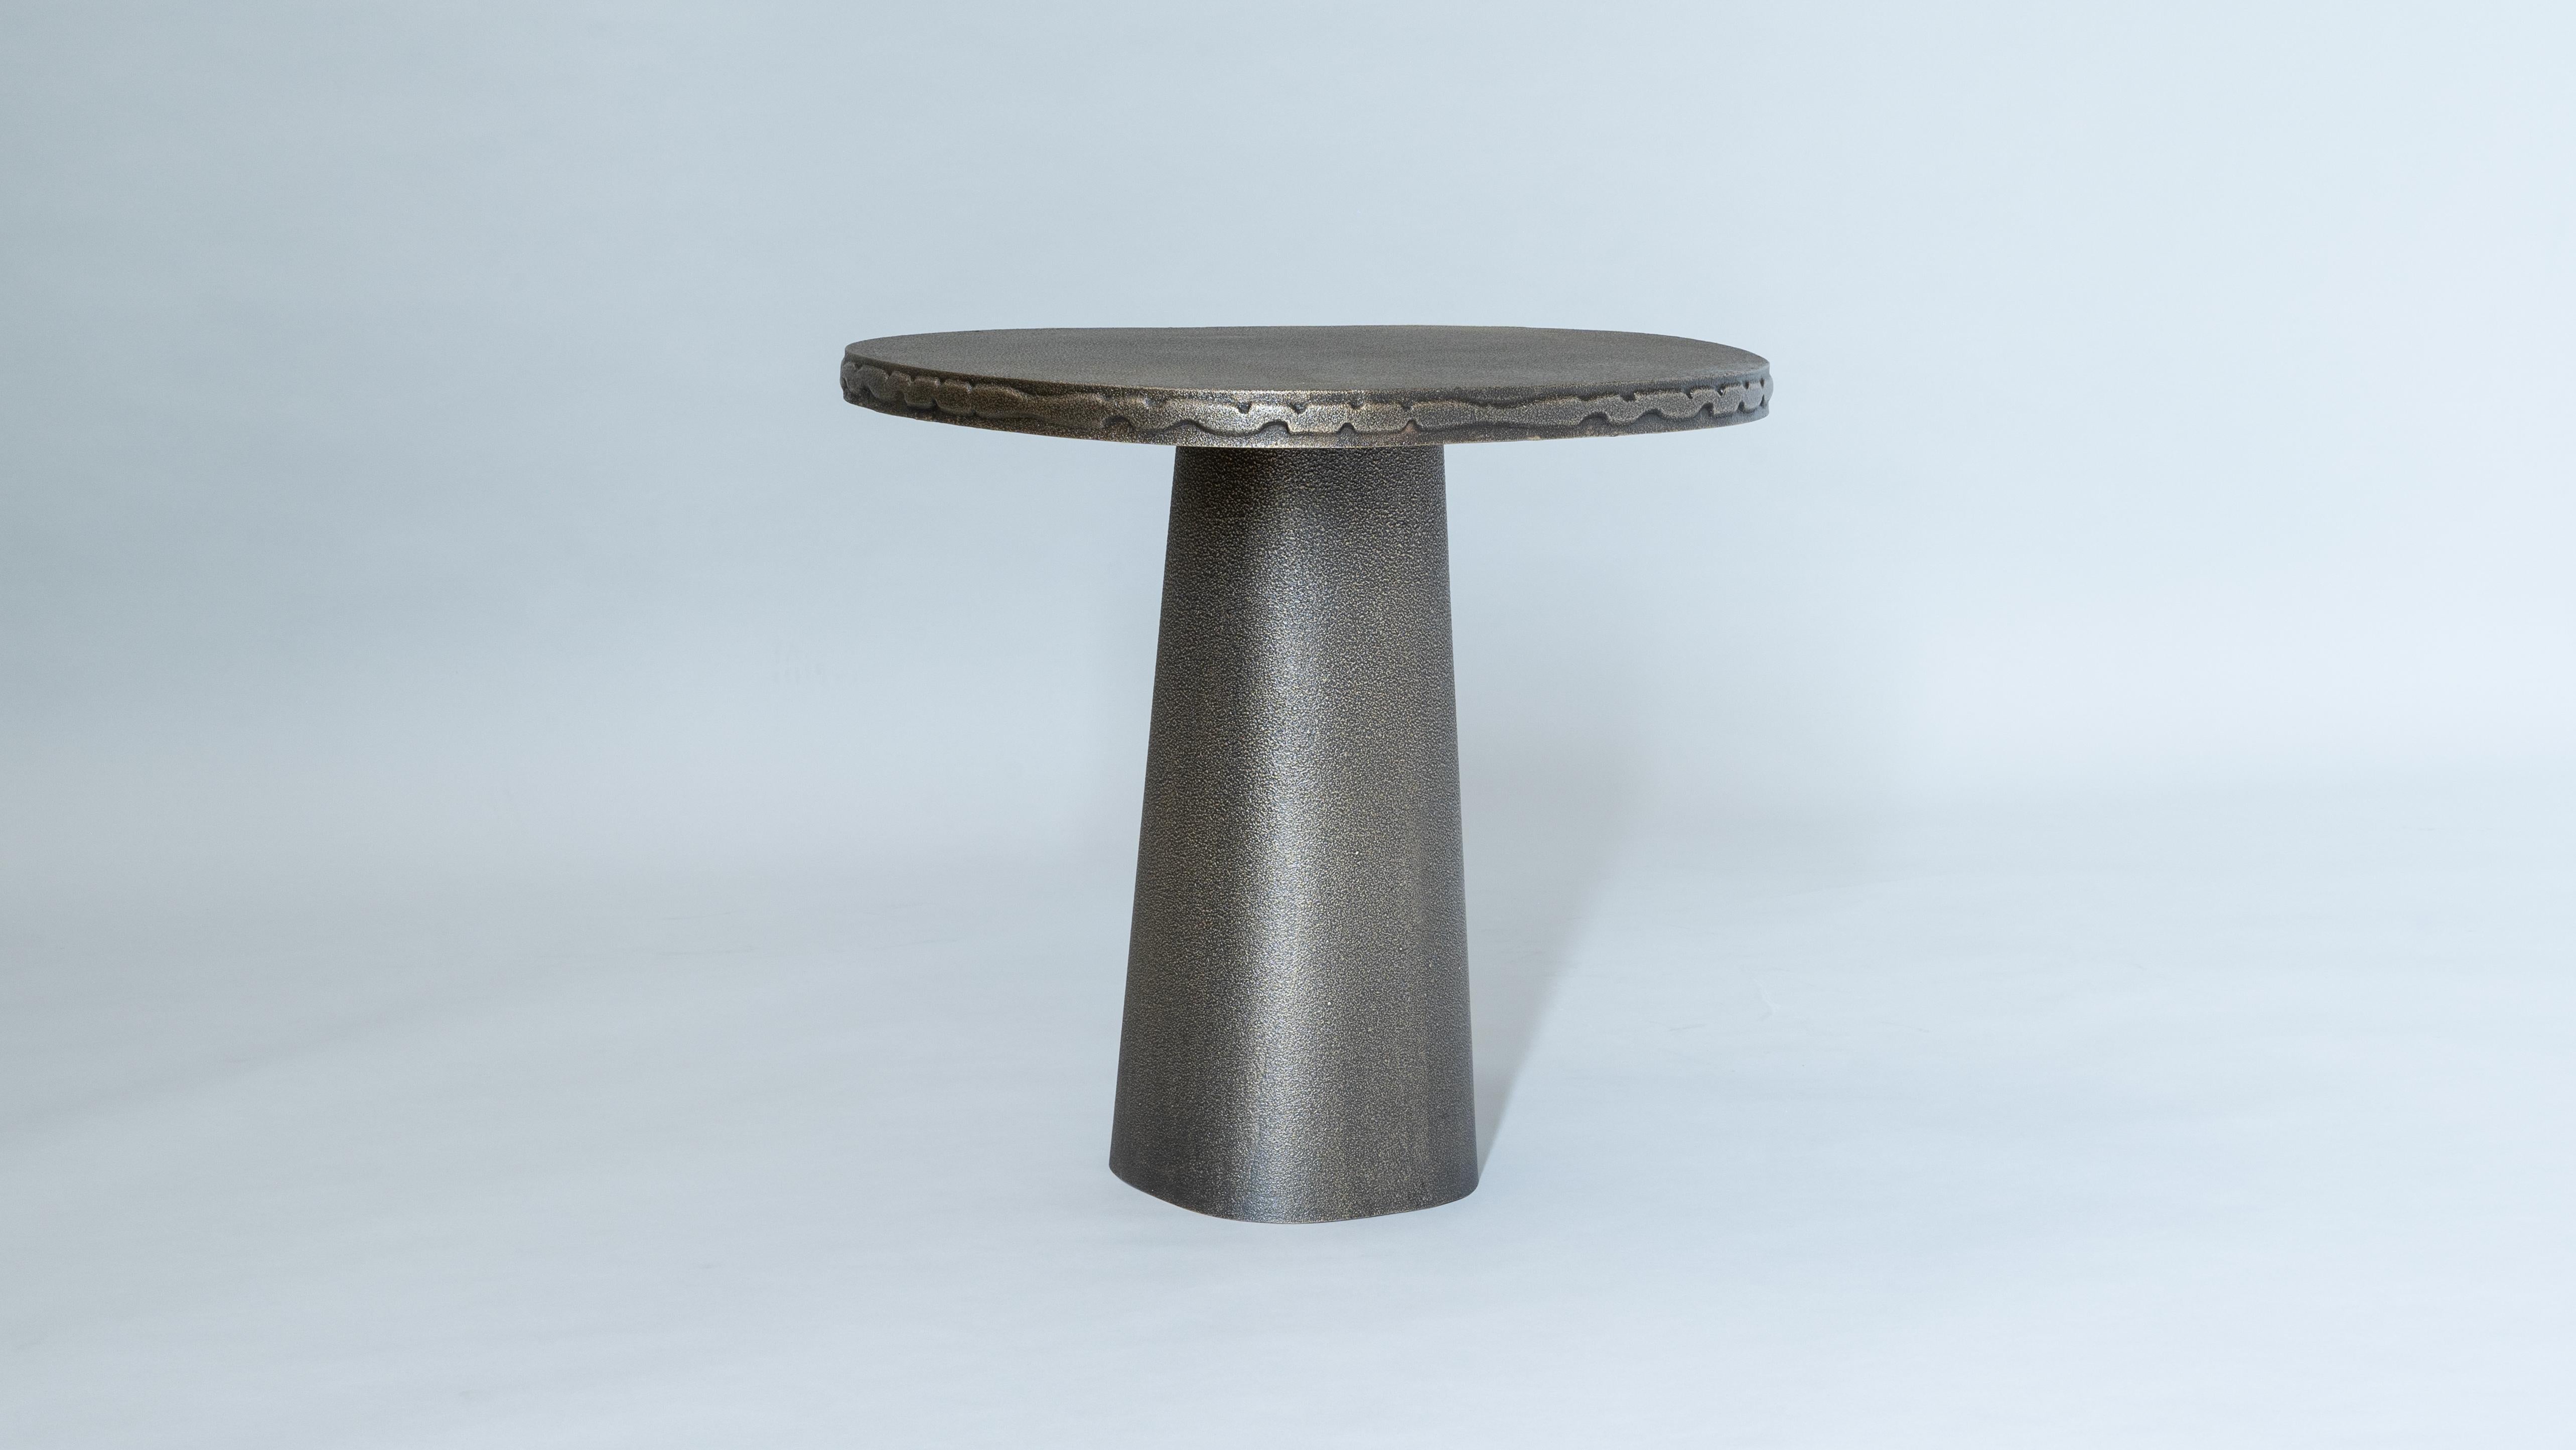 Entièrement coulée en bronze, la table d'appoint Badal est une étude des possibilités texturales des métaux, réalisée avec des motifs de surface complexes et une bande surélevée de motifs décoratifs sur le bord.